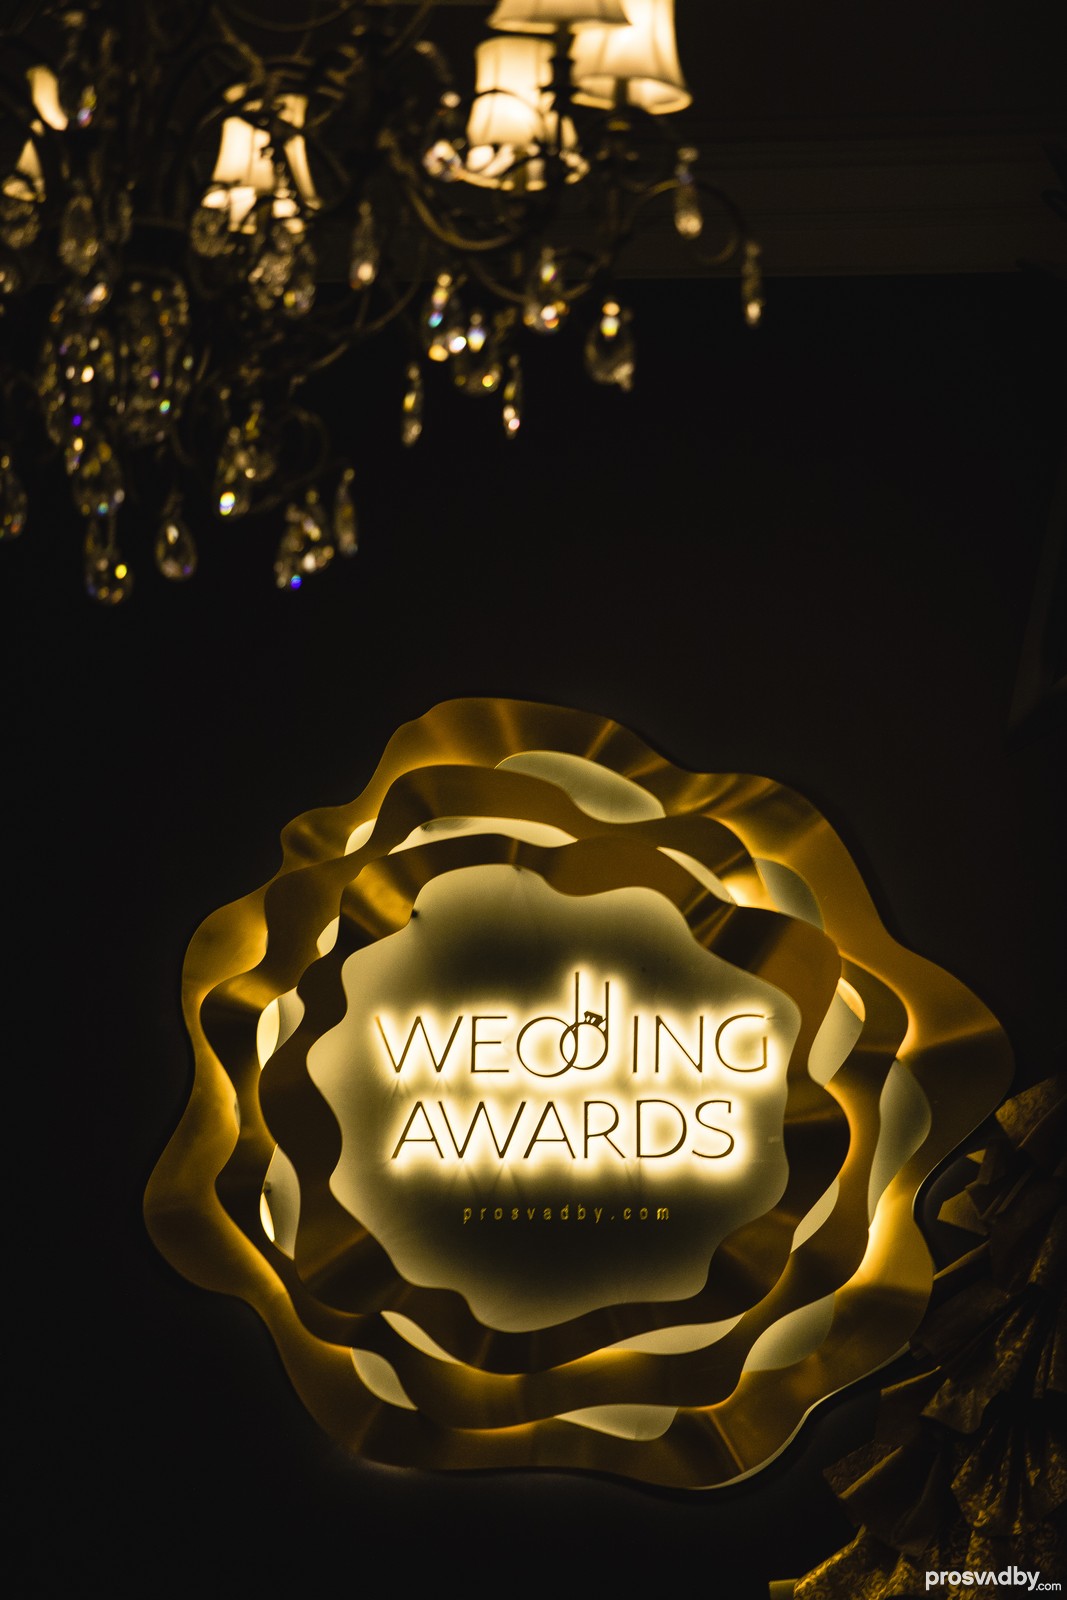 Логотип Prosvadby.com Wedding Awards красиво светился в темноте